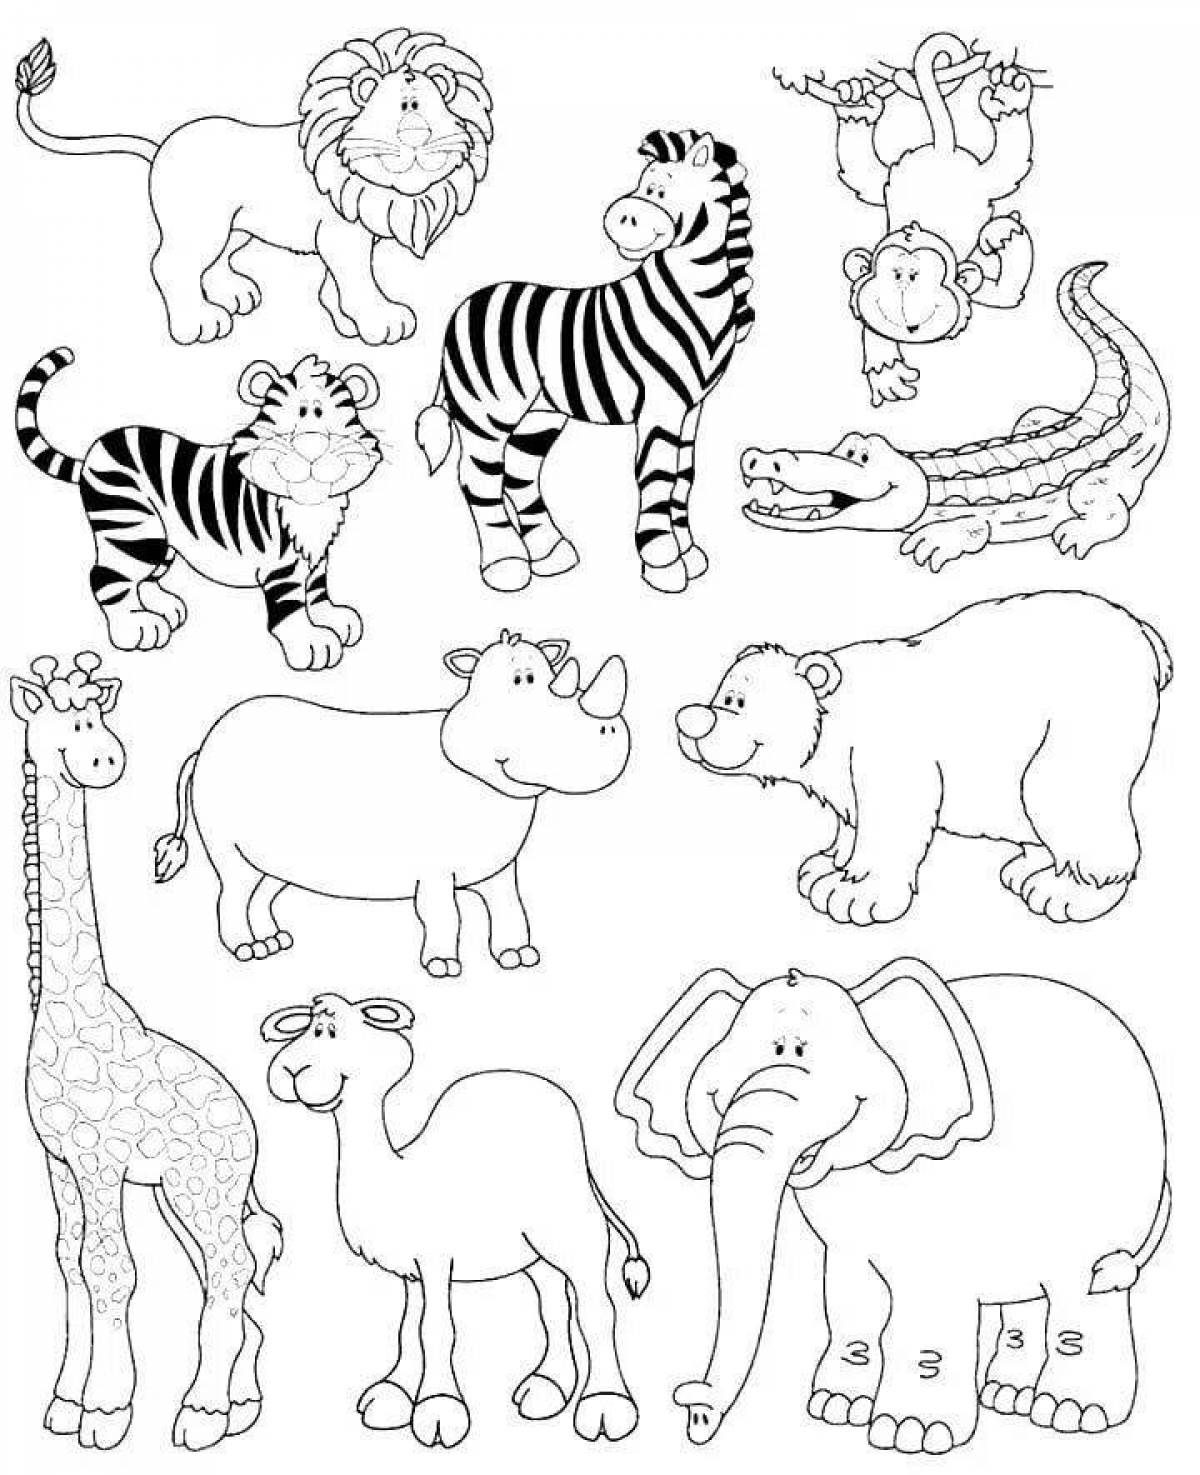 Фото Сказочная раскраска разных животных